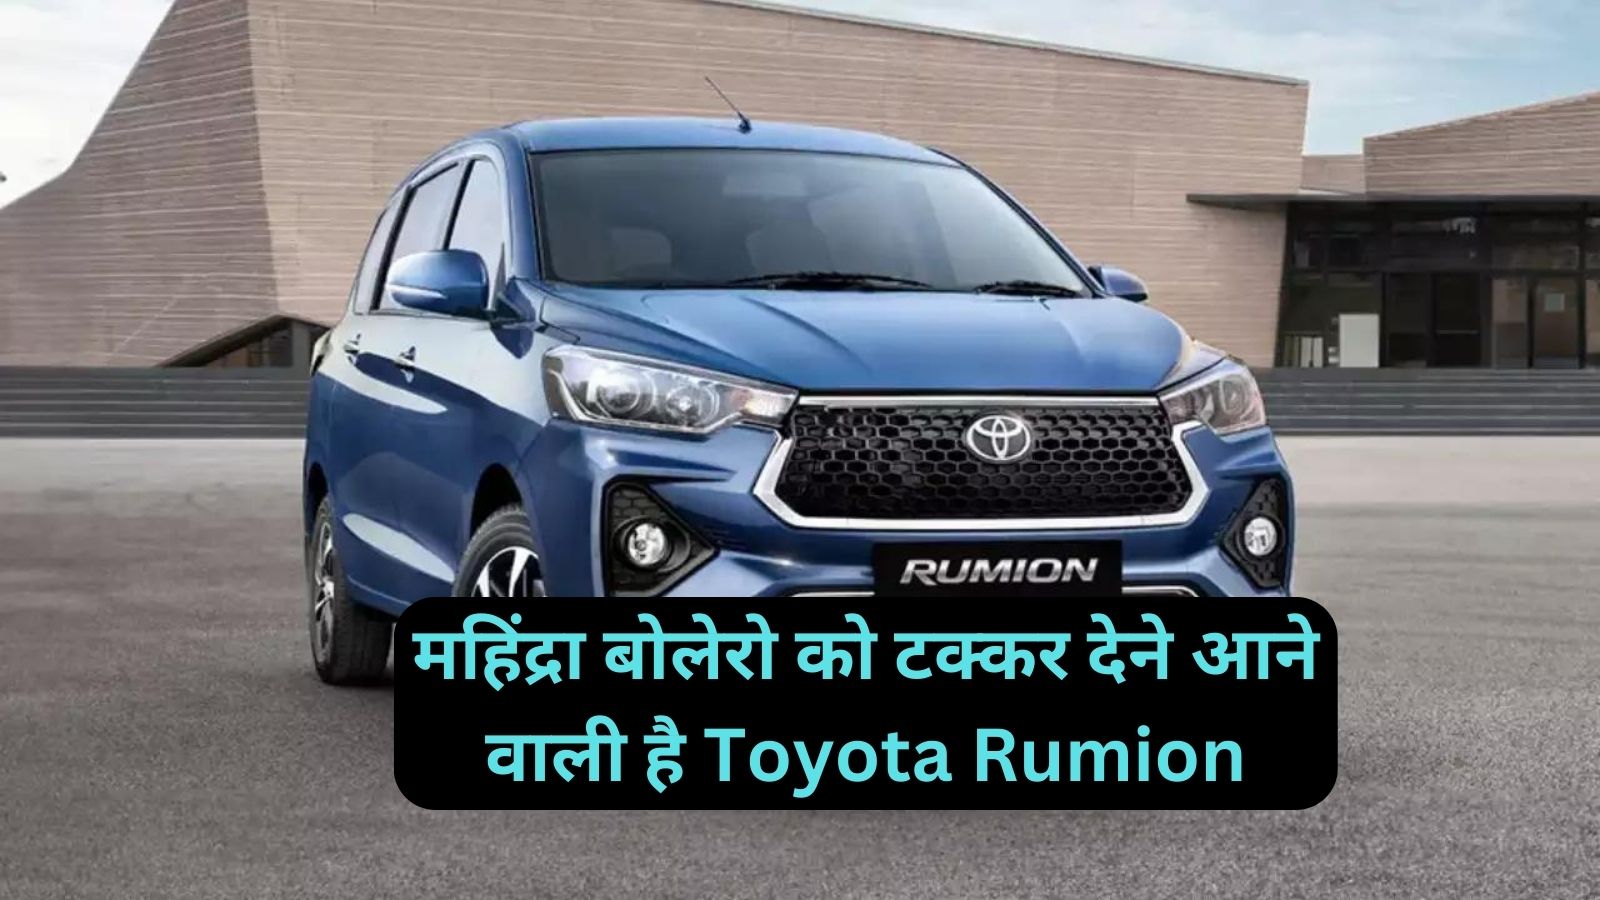 महिंद्रा बोलेरो को टक्कर देने आने वाली है Toyota Rumion,जानिए इसके लाजवाब फीचर्स और दमदार माइलेज के बारे मे